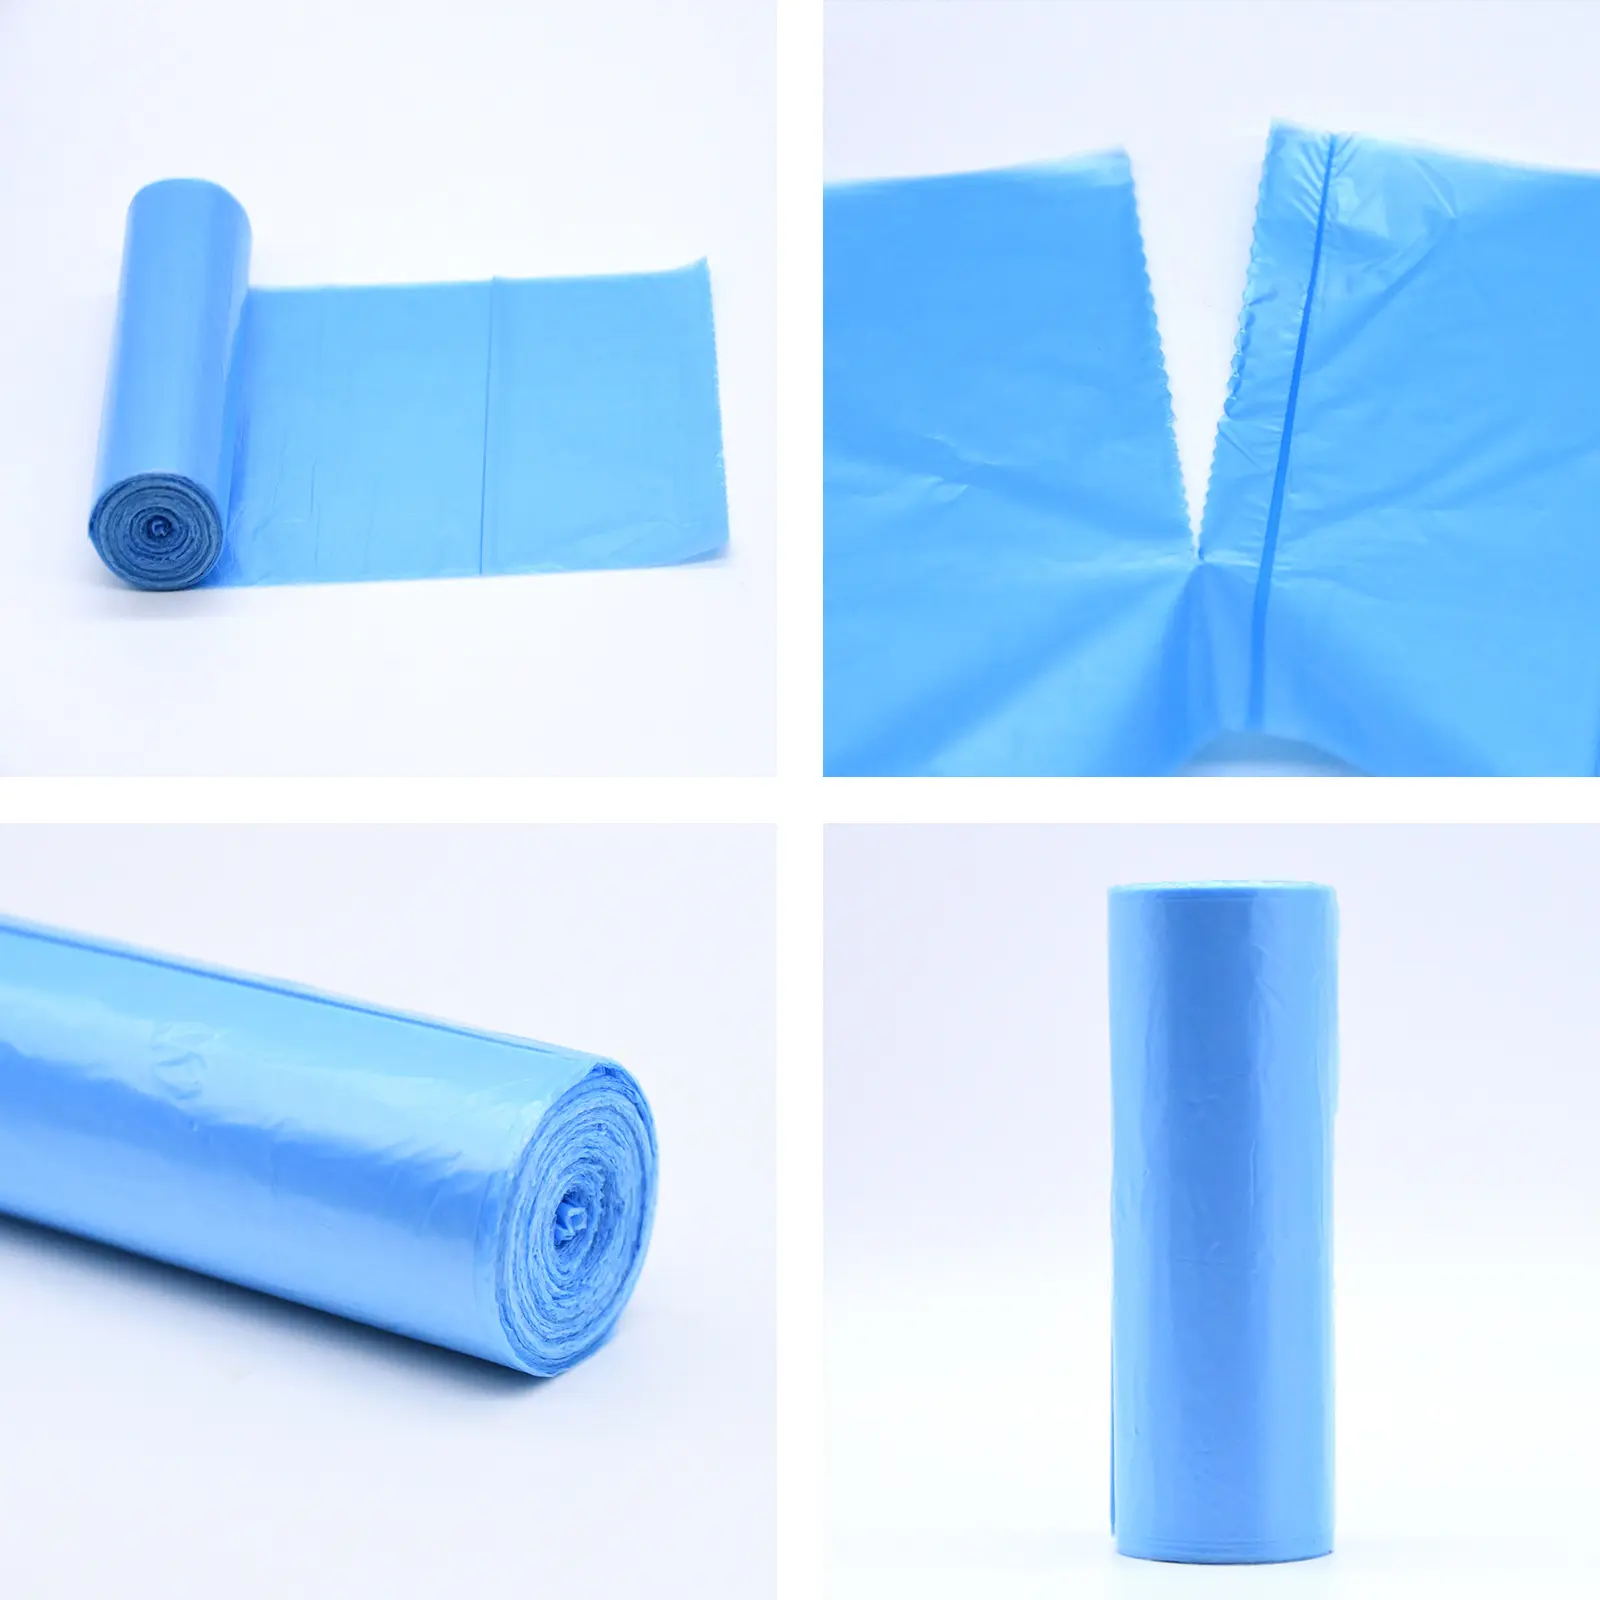 منتجات جديدة للبيع بالجملة من المصنع مباشرة حقيبة قمامة بلاستيكية بطانة سلة سلة للتعبئة المكشوفة حقائب قمامة من الصين